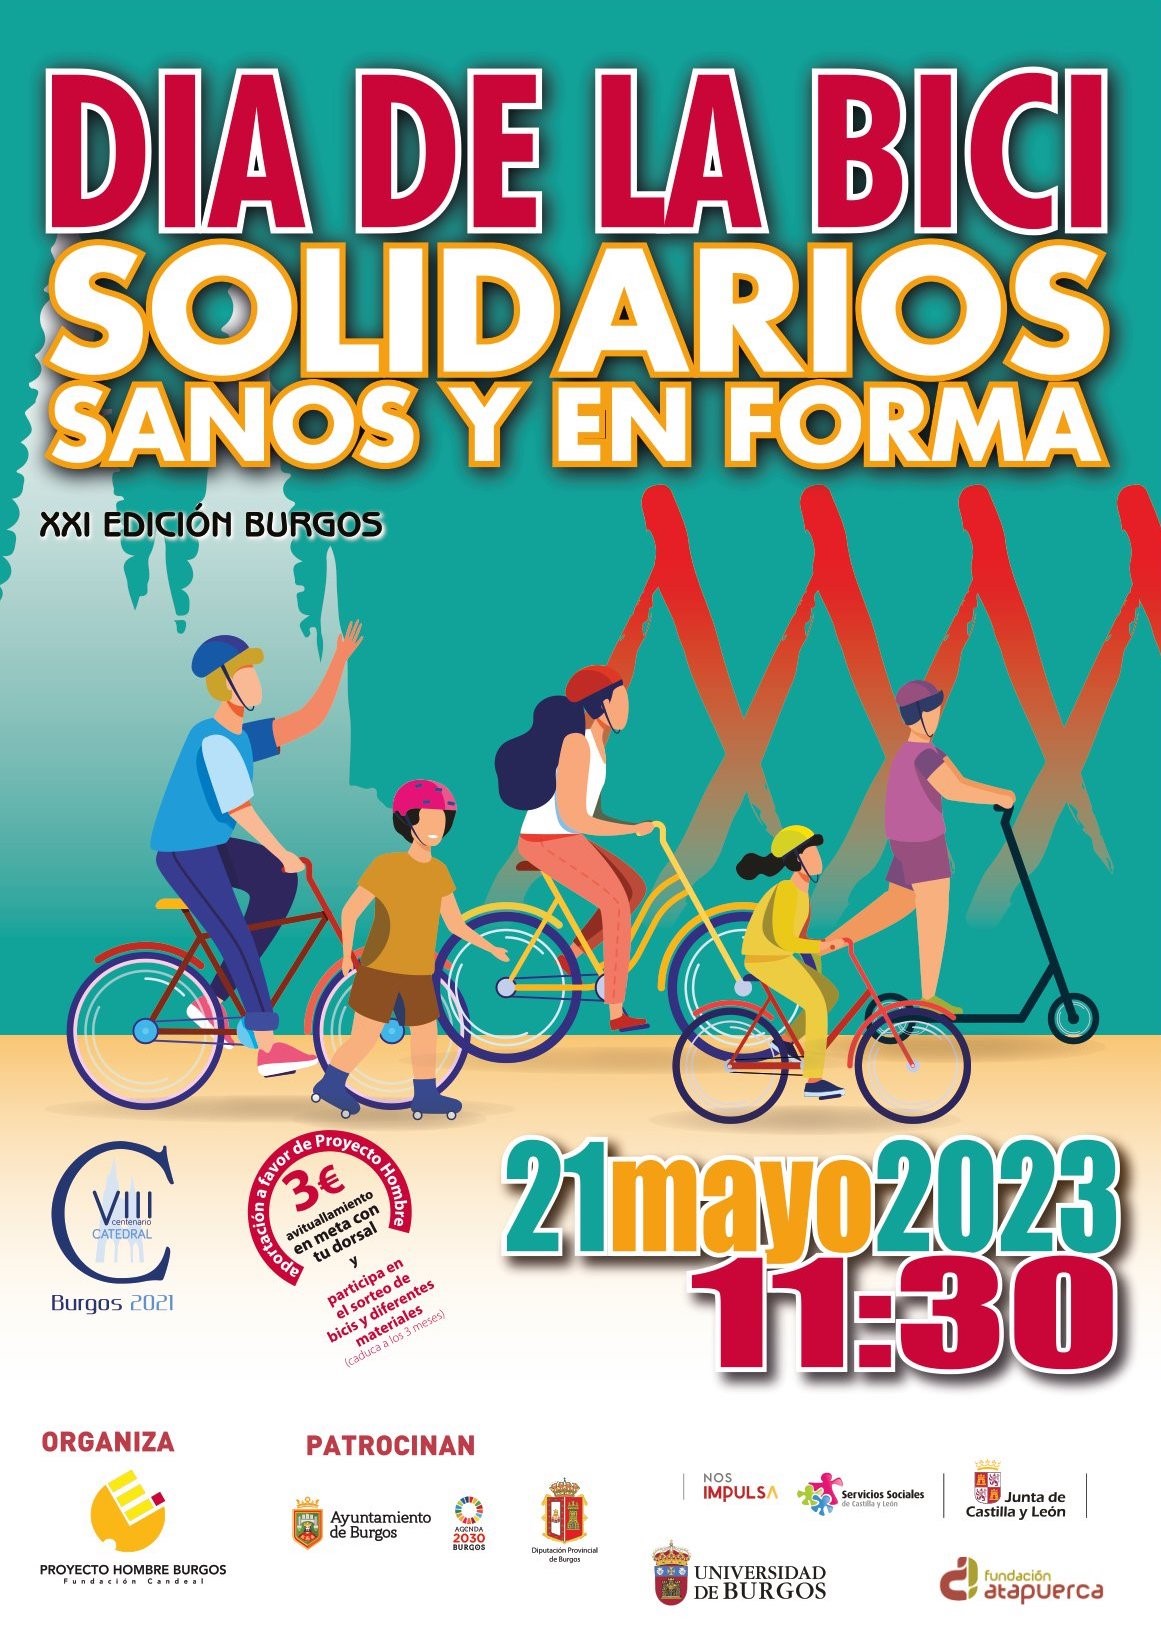 Encantador asistencia heroico Día de la Bici: 21 mayo 2023 | Universidad de Burgos